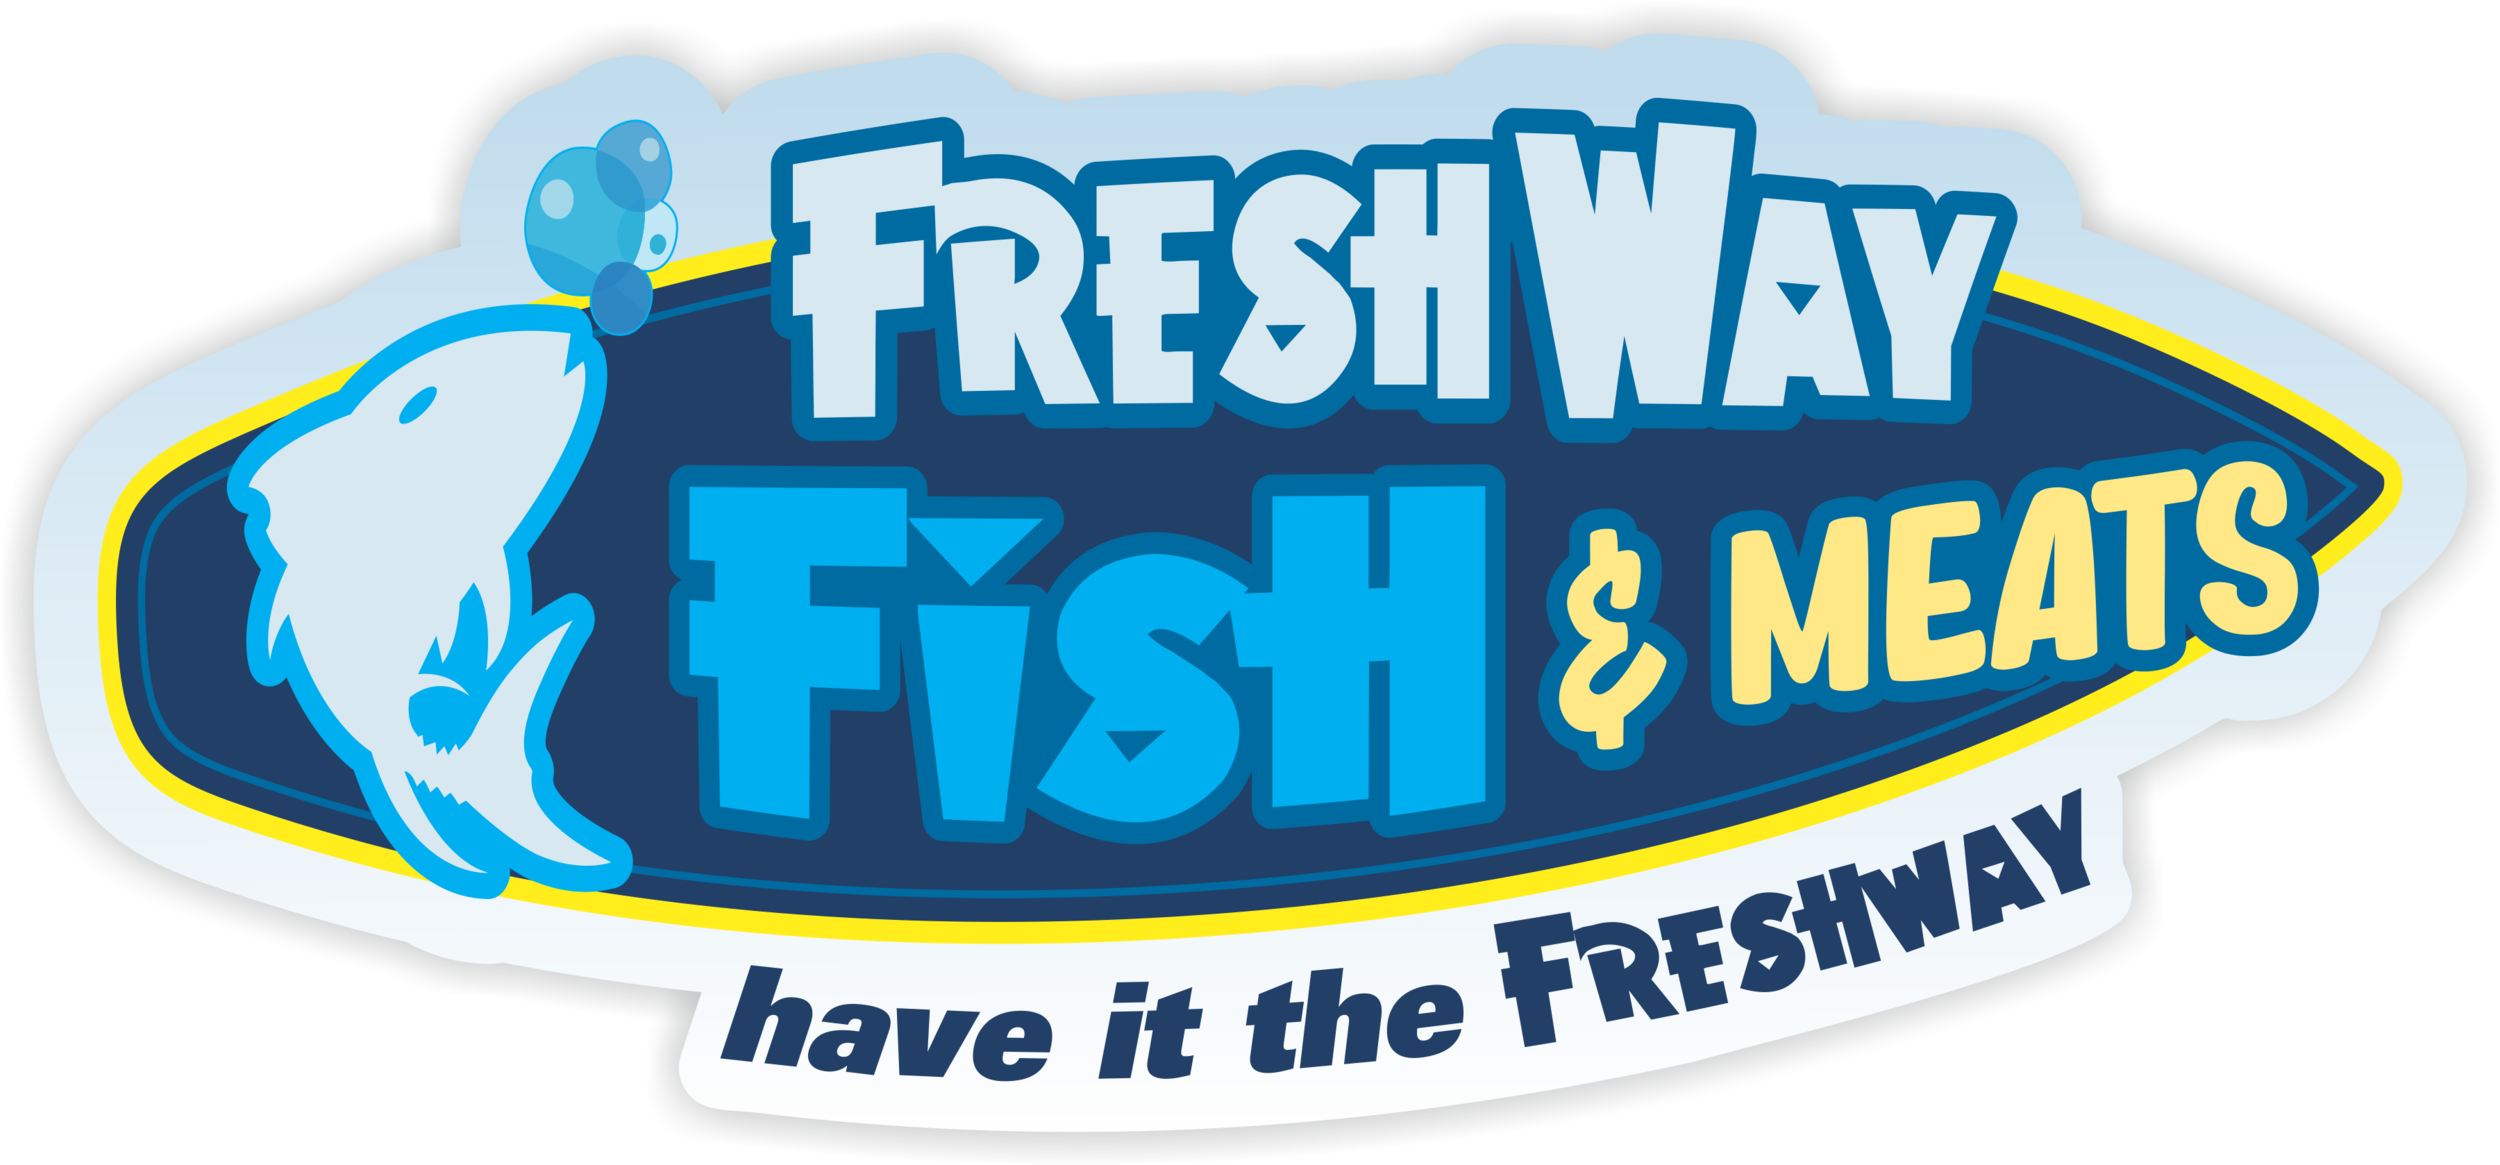 FreshWay Fish